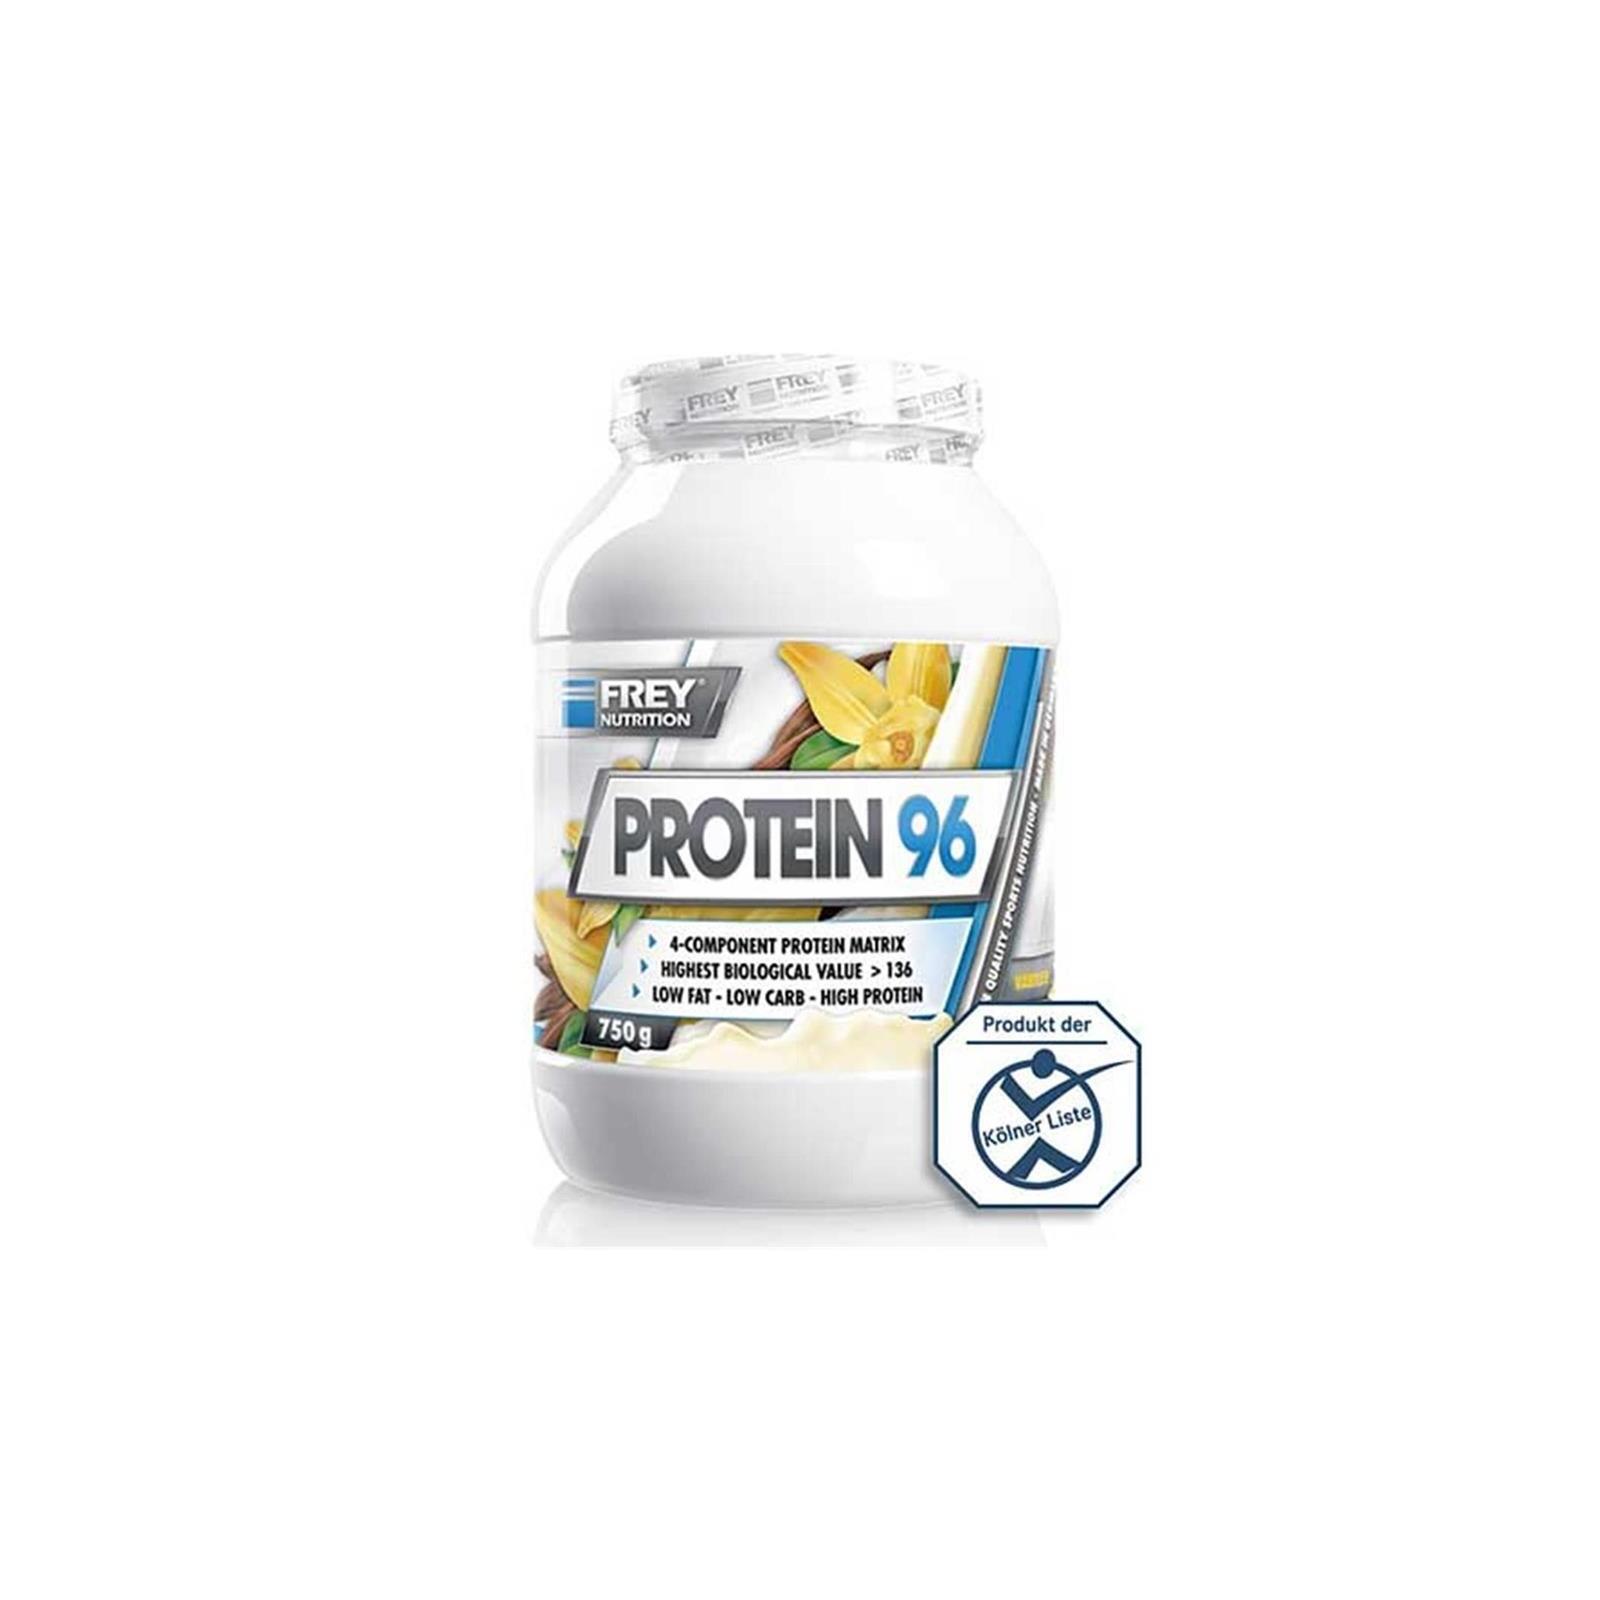 Frey Nutrition Protein 96, 750g Schoko